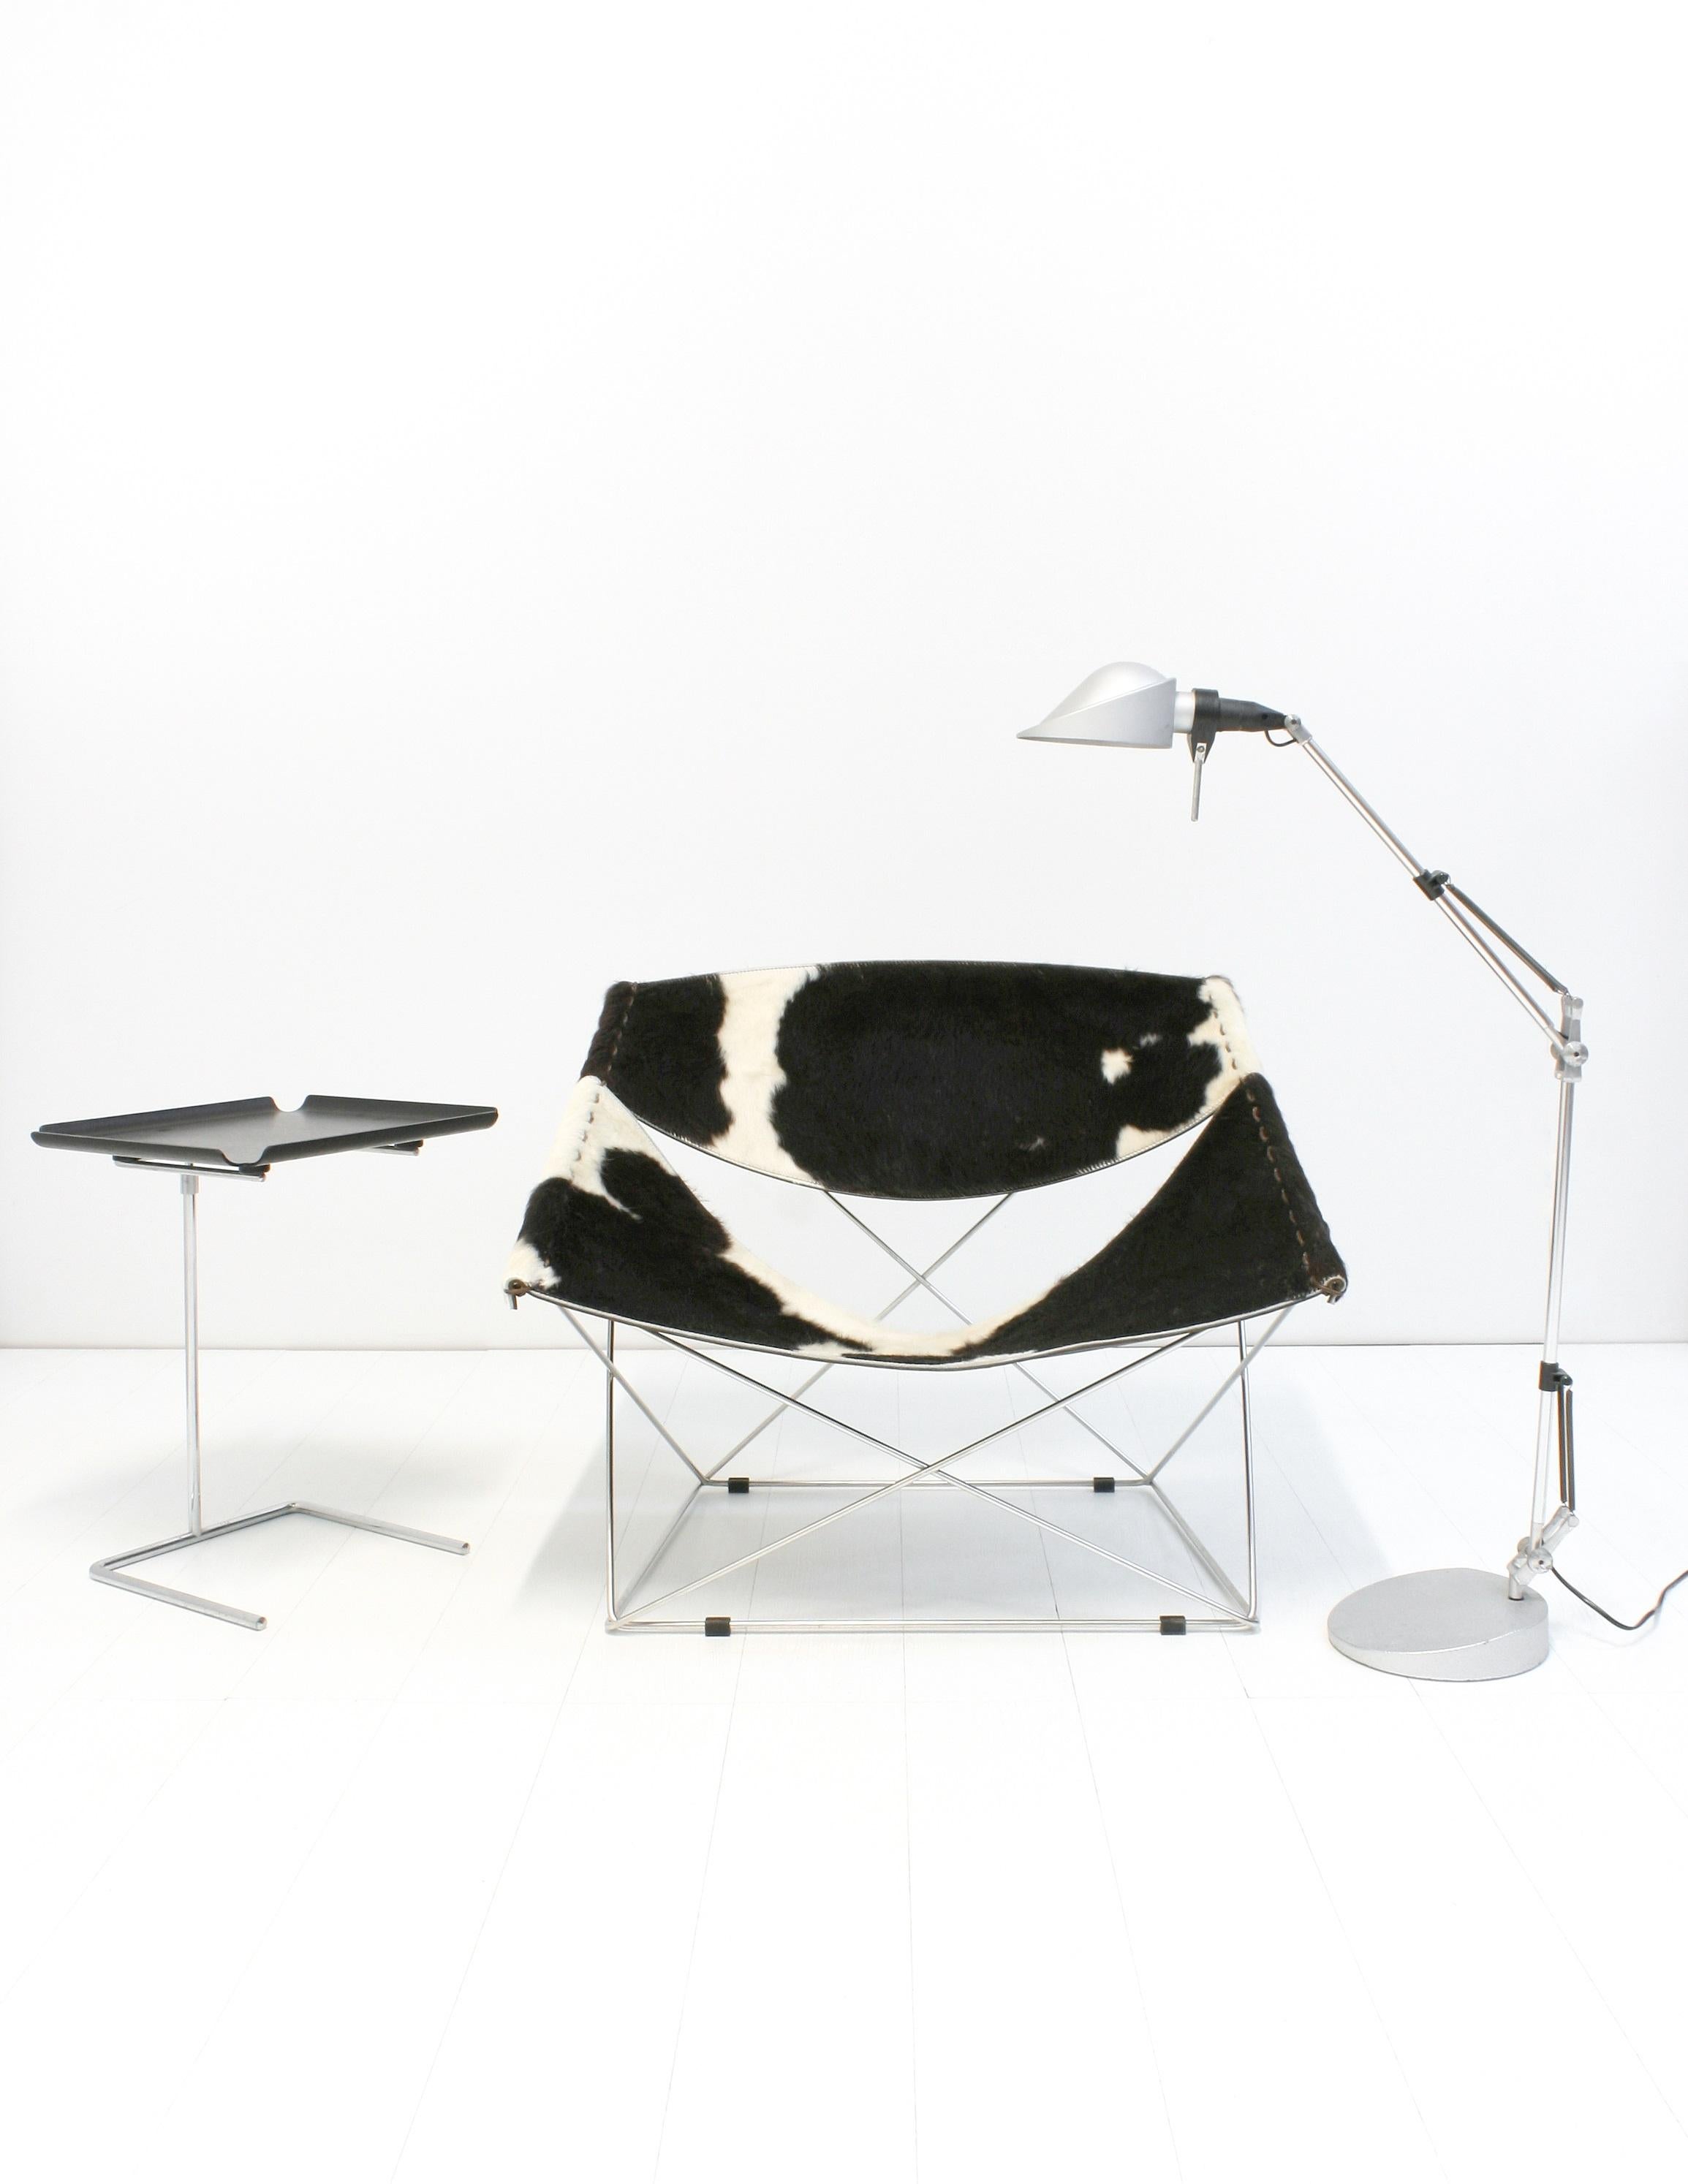 Der F675, auch bekannt als Butterfly Chair, wurde 1963 von Pierre Paulin entworfen und von Artifort, Holland, hergestellt.
Dieser Stuhl mit eleganten Linien wird mit dem originalen Kuhfellbezug bearbeitet. Der Rahmen ist aus hochwertigem Metall